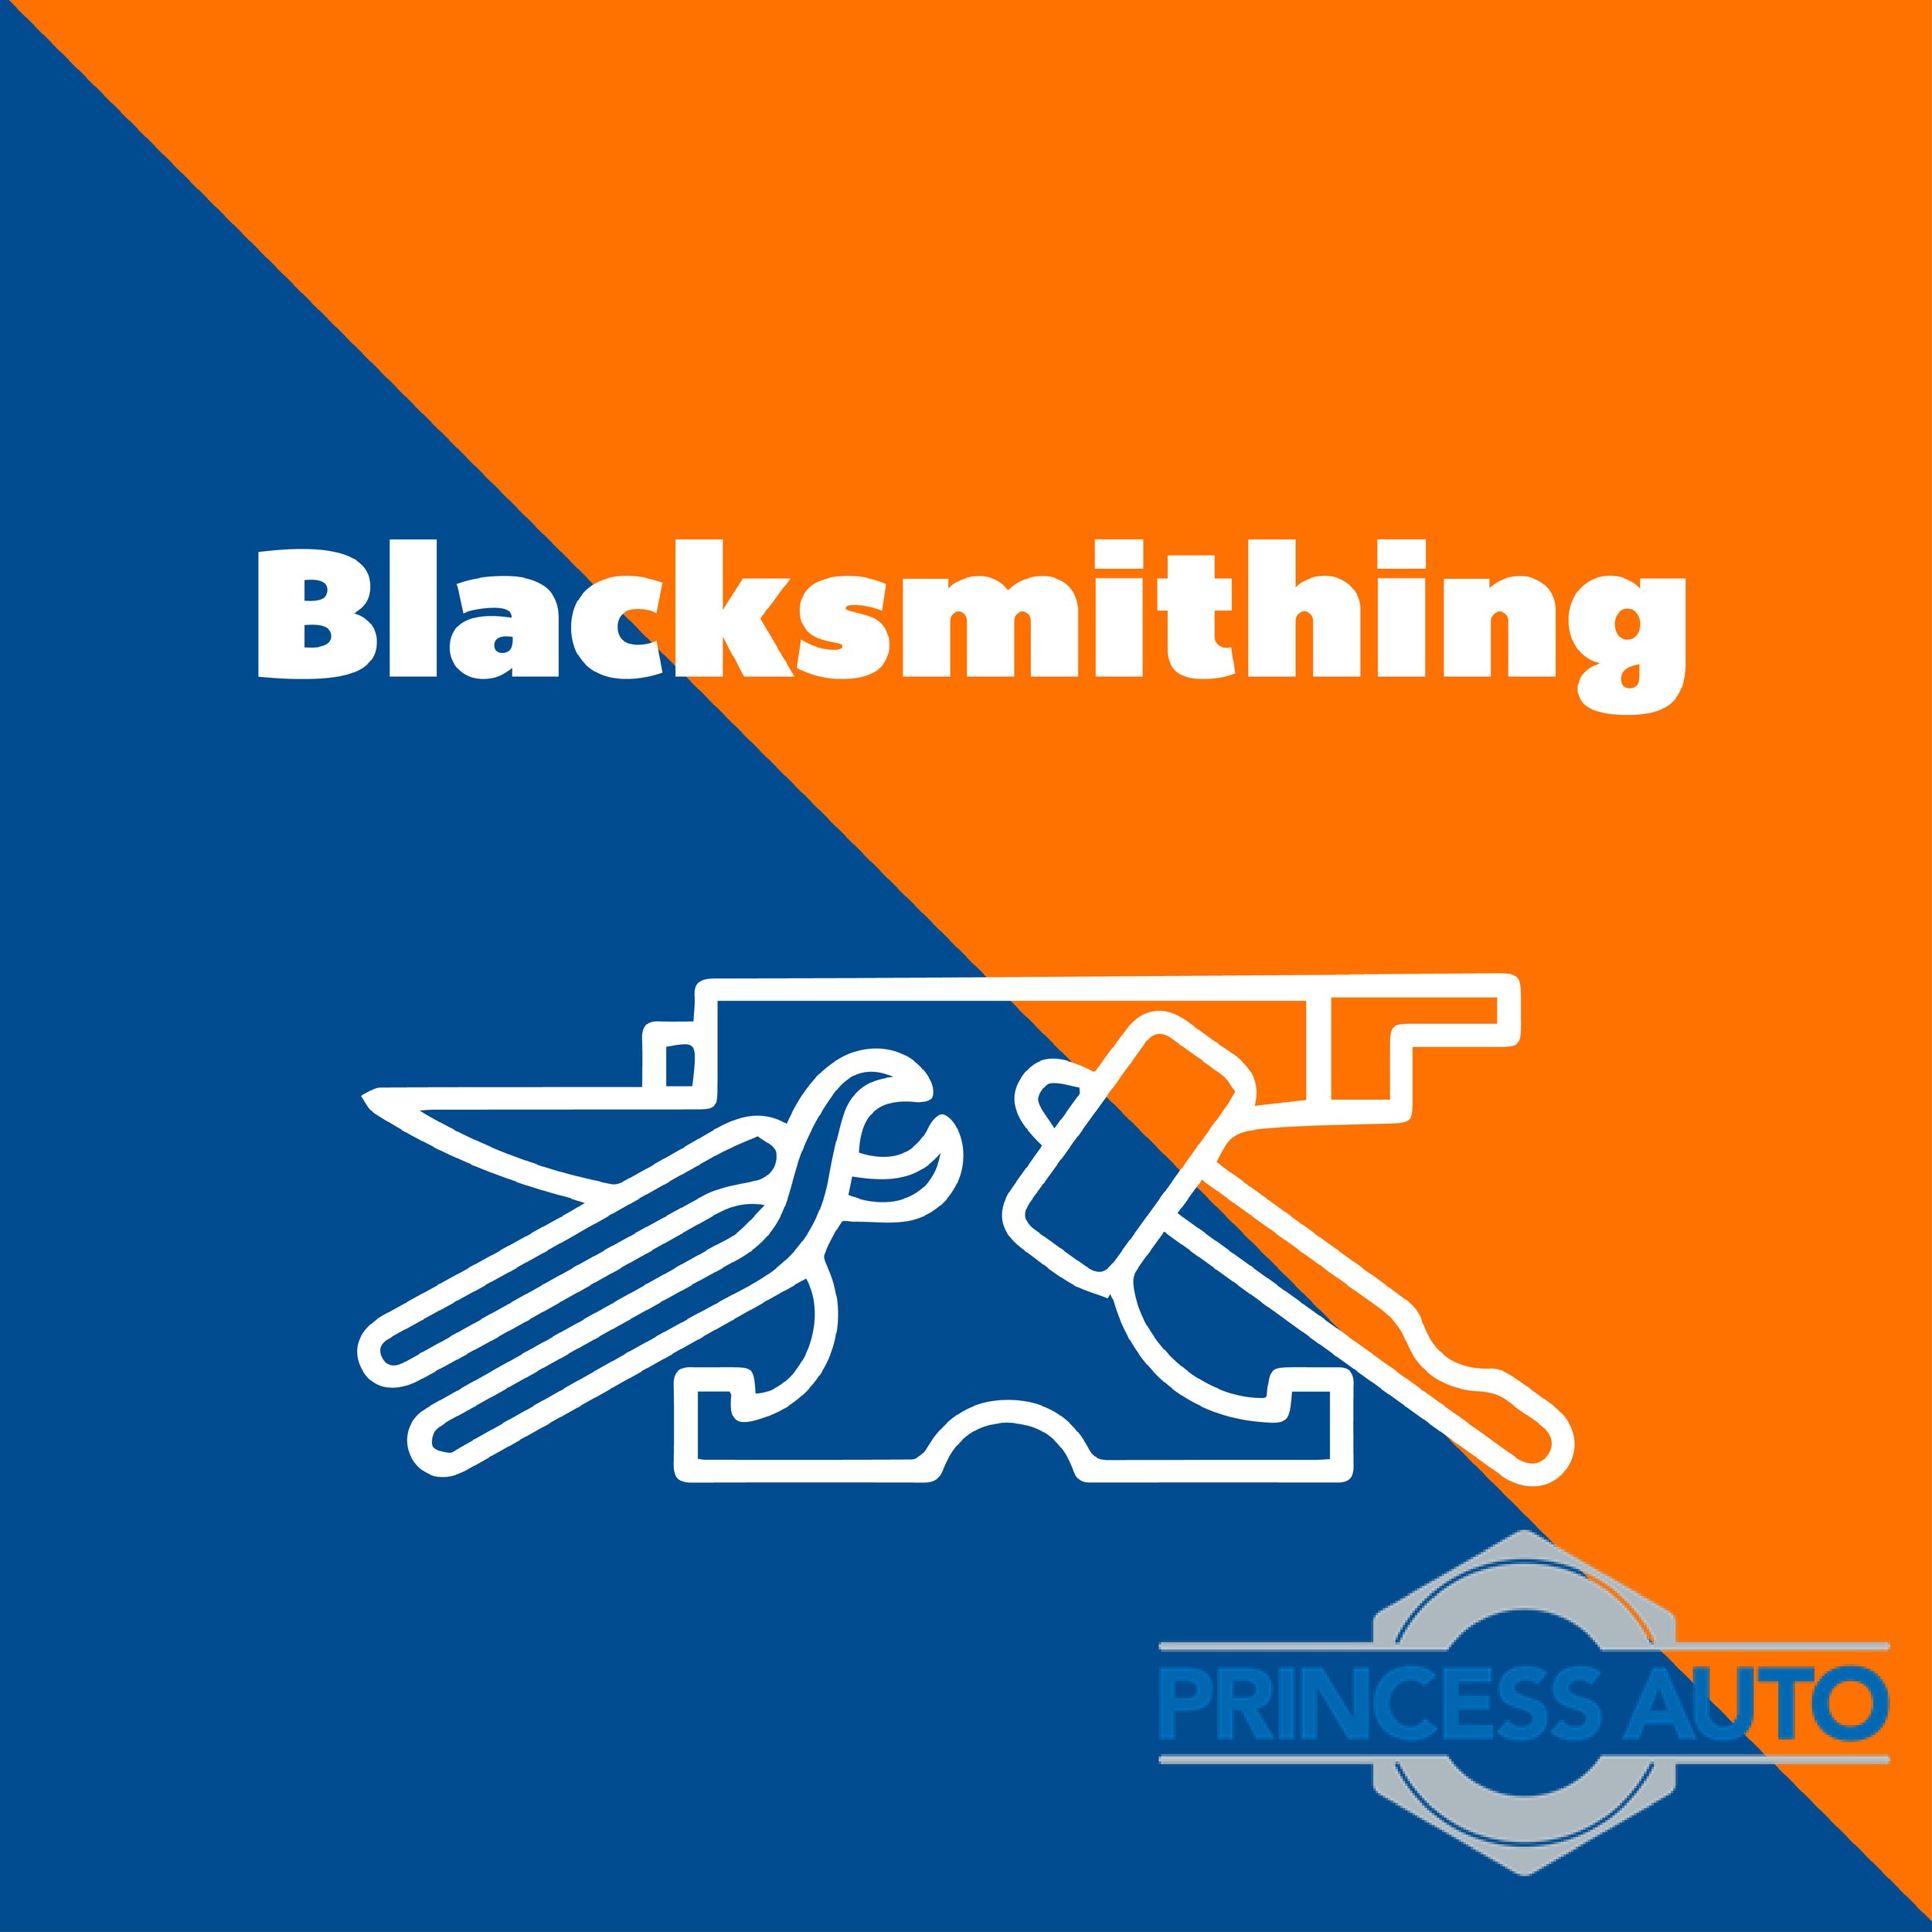 Blacksmithing Princess Auto-01.jpg